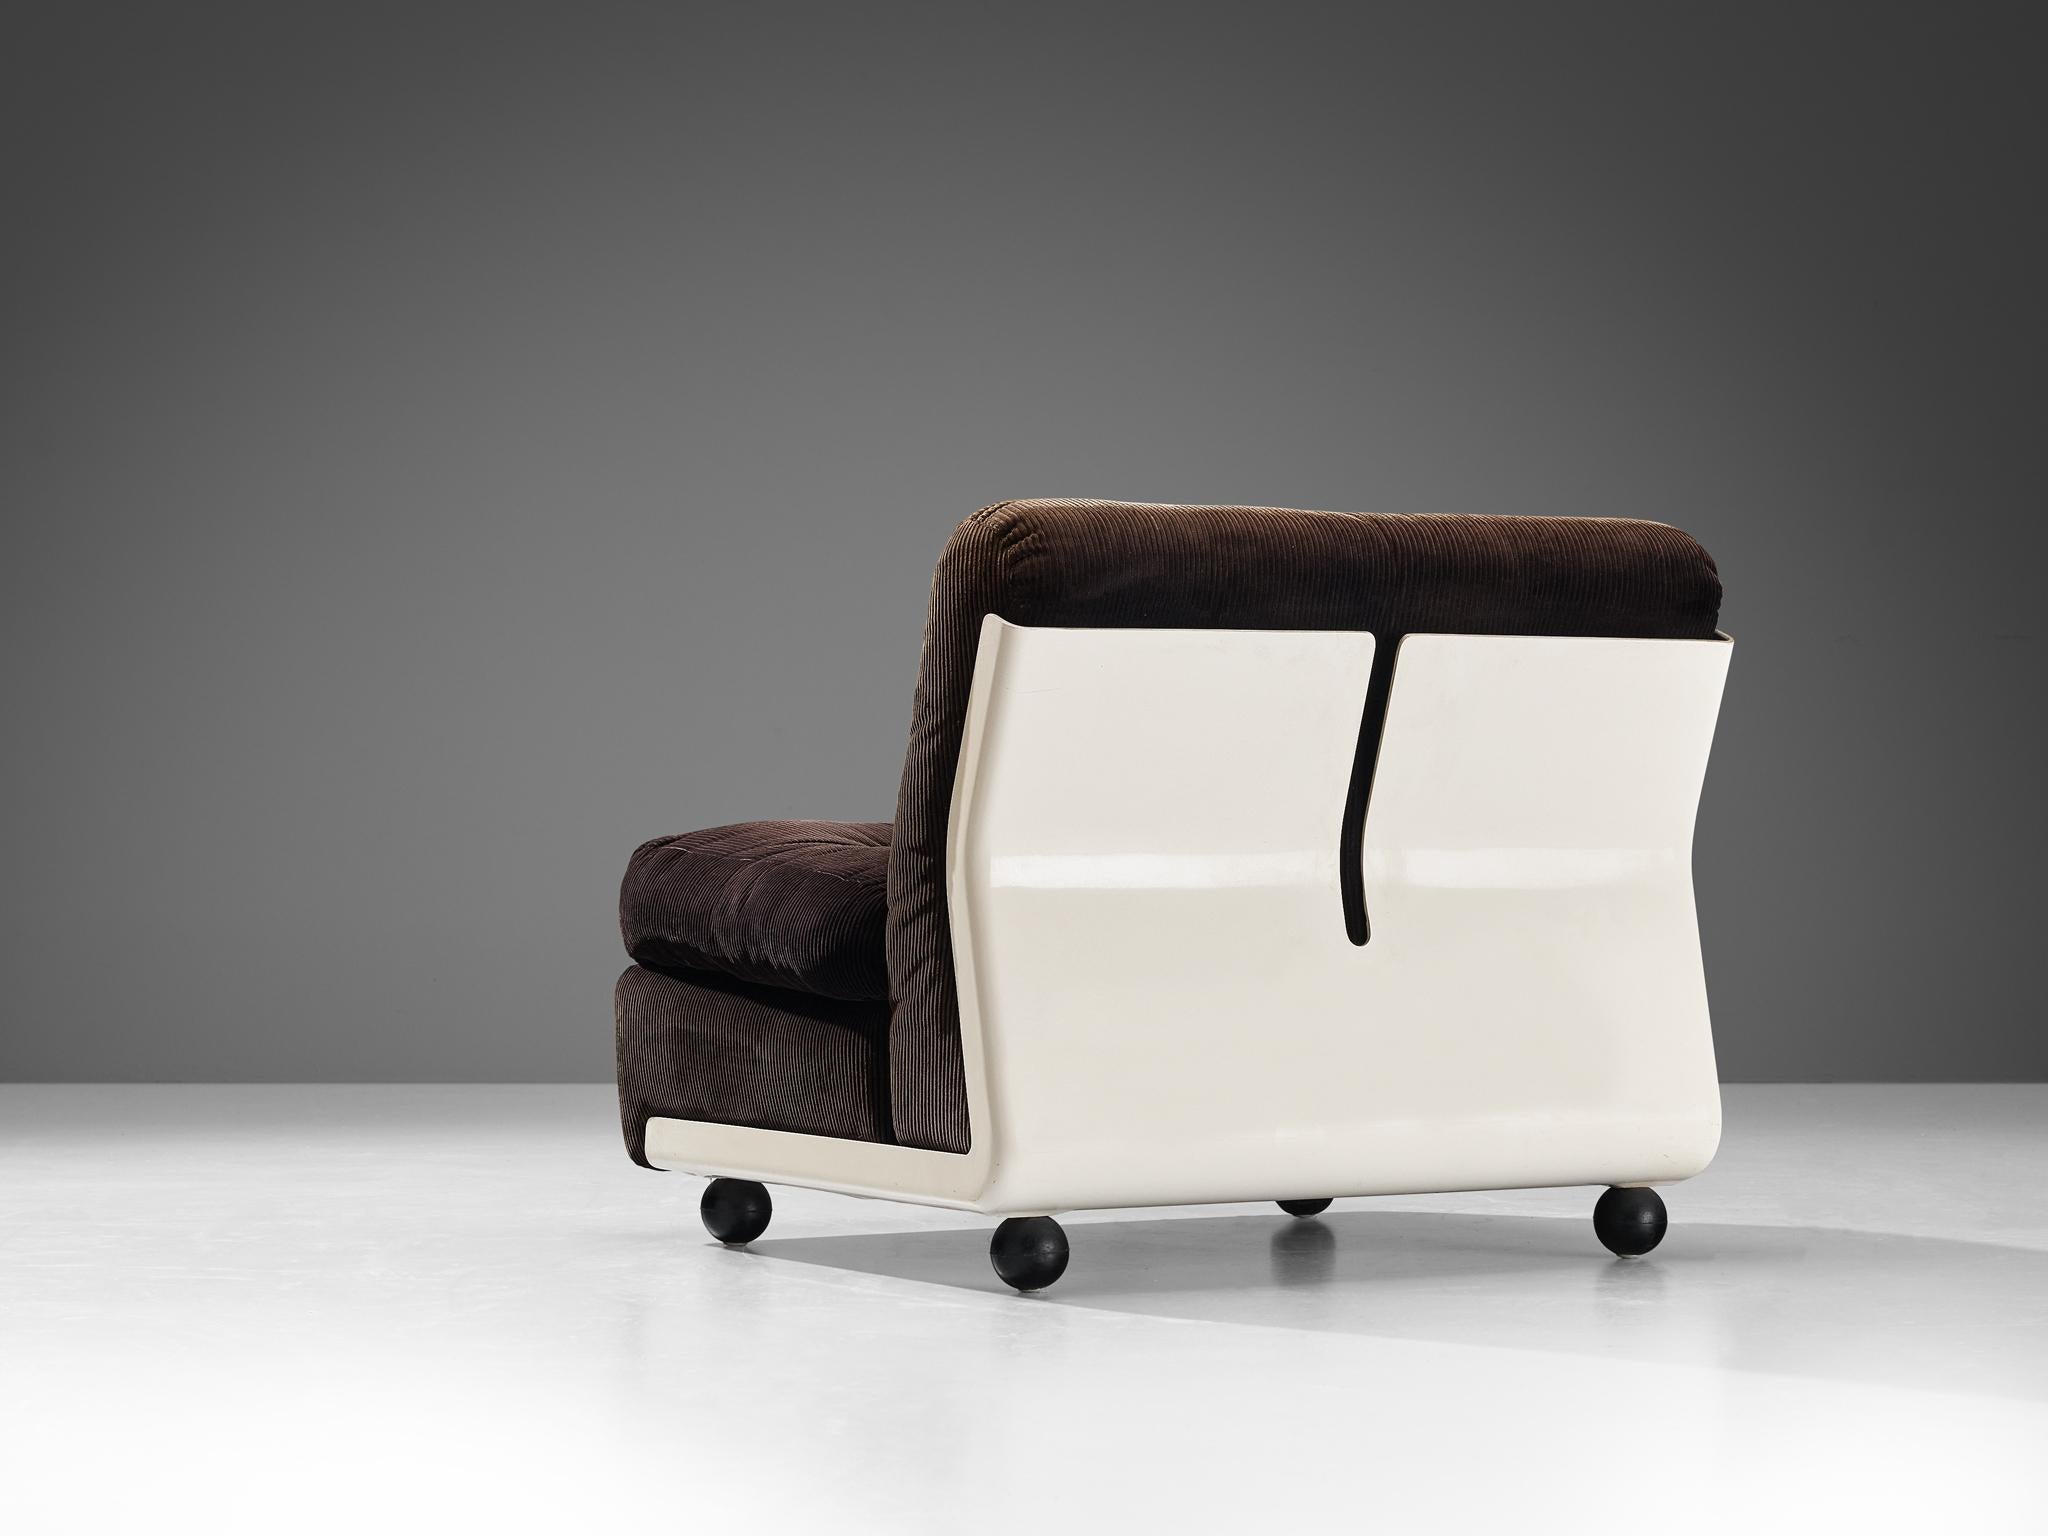 Mario Bellini pour B&B Italia, chaise longue 'Amanta', tissu et fibre de verre, Italie, 1966.

Chaise longue et volumineuse créée pour le confort. Les chaises longues ou le canapé modulaire 